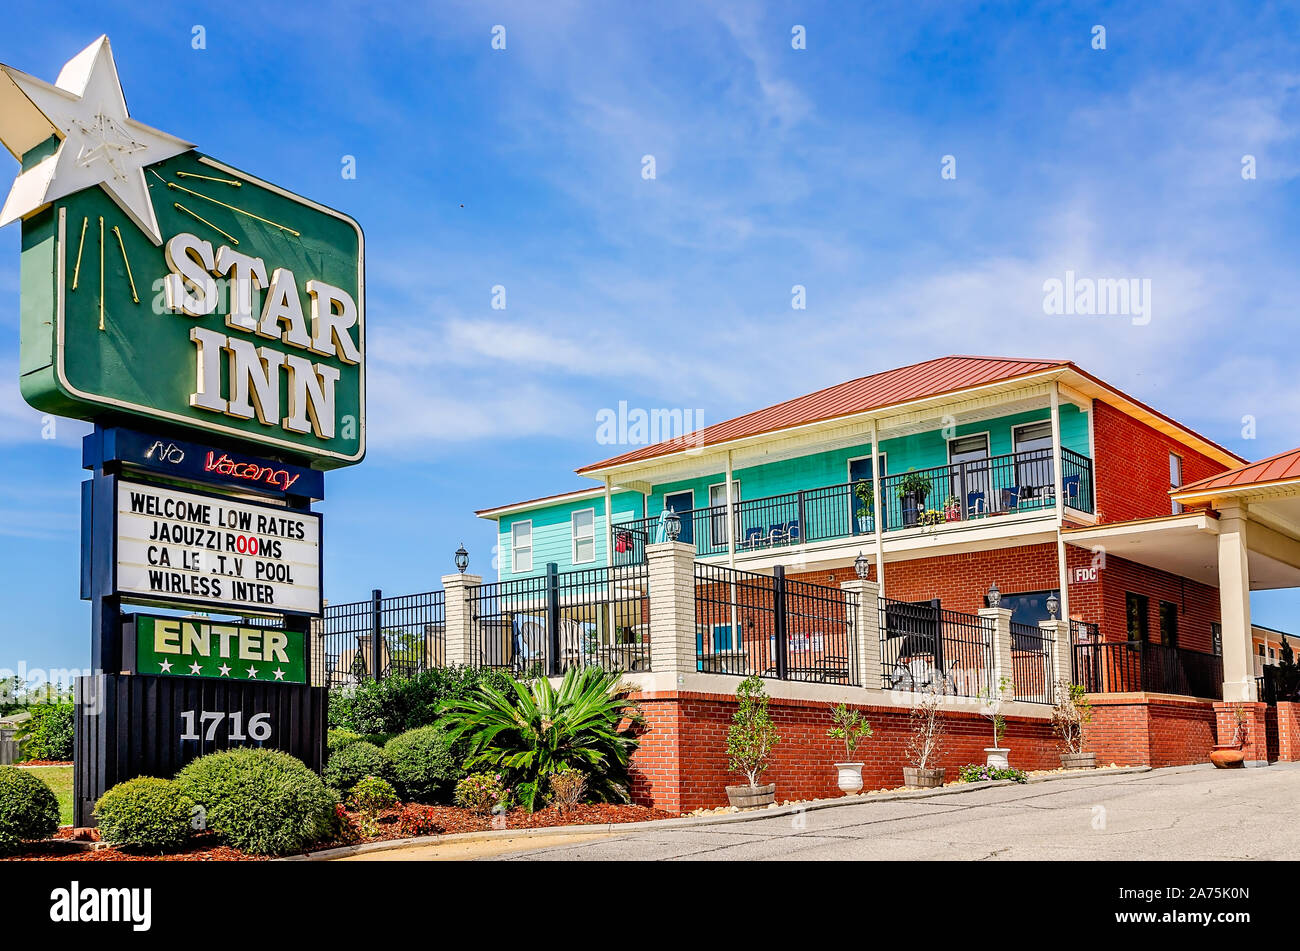 Un signe pour le Star Inn Motel est photographié avec le motel de l'arrière-plan, le 22 octobre 2019 à Biloxi, Mississippi. Banque D'Images